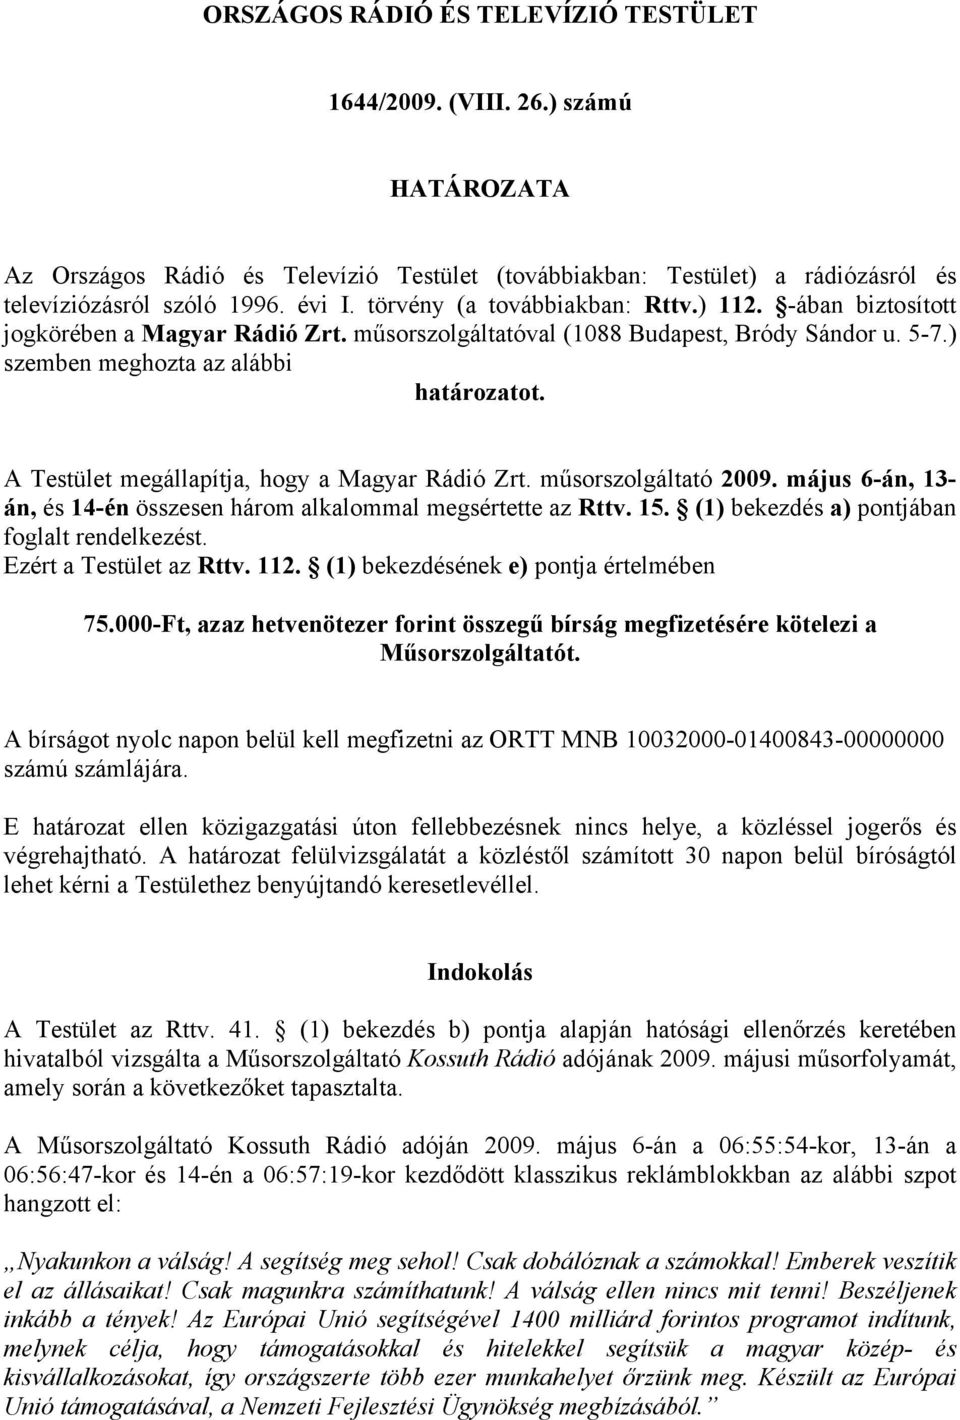 A Testület megállapítja, hogy a Magyar Rádió Zrt. műsorszolgáltató 2009. május 6-án, 13- án, és 14-én összesen három alkalommal megsértette az Rttv. 15. (1) bekezdés a) pontjában foglalt rendelkezést.